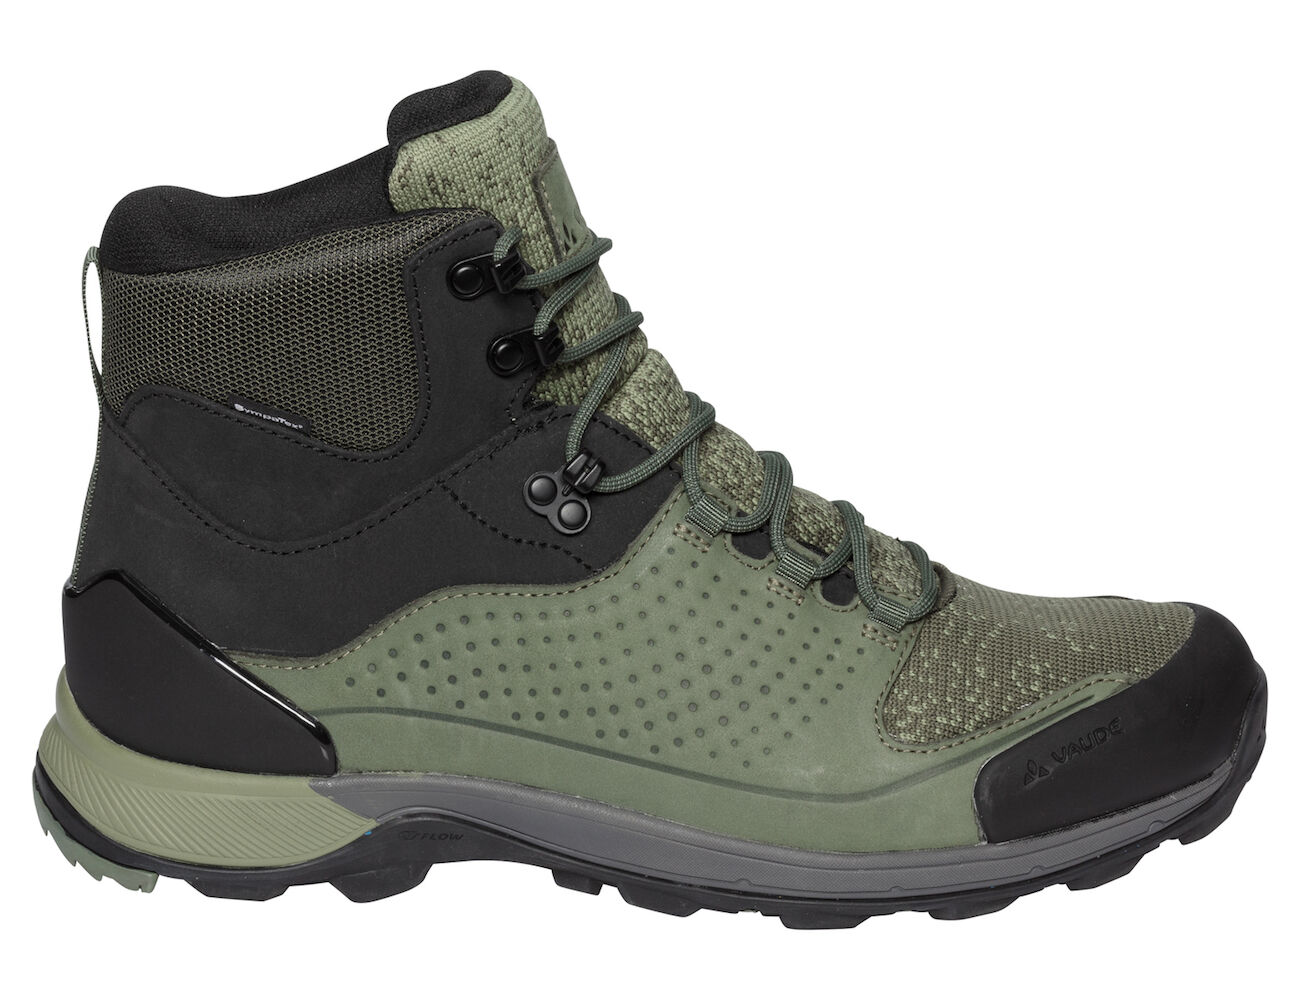 Vaude - Men's TRK Skarvan Mid STX - Hiking boots - Men's